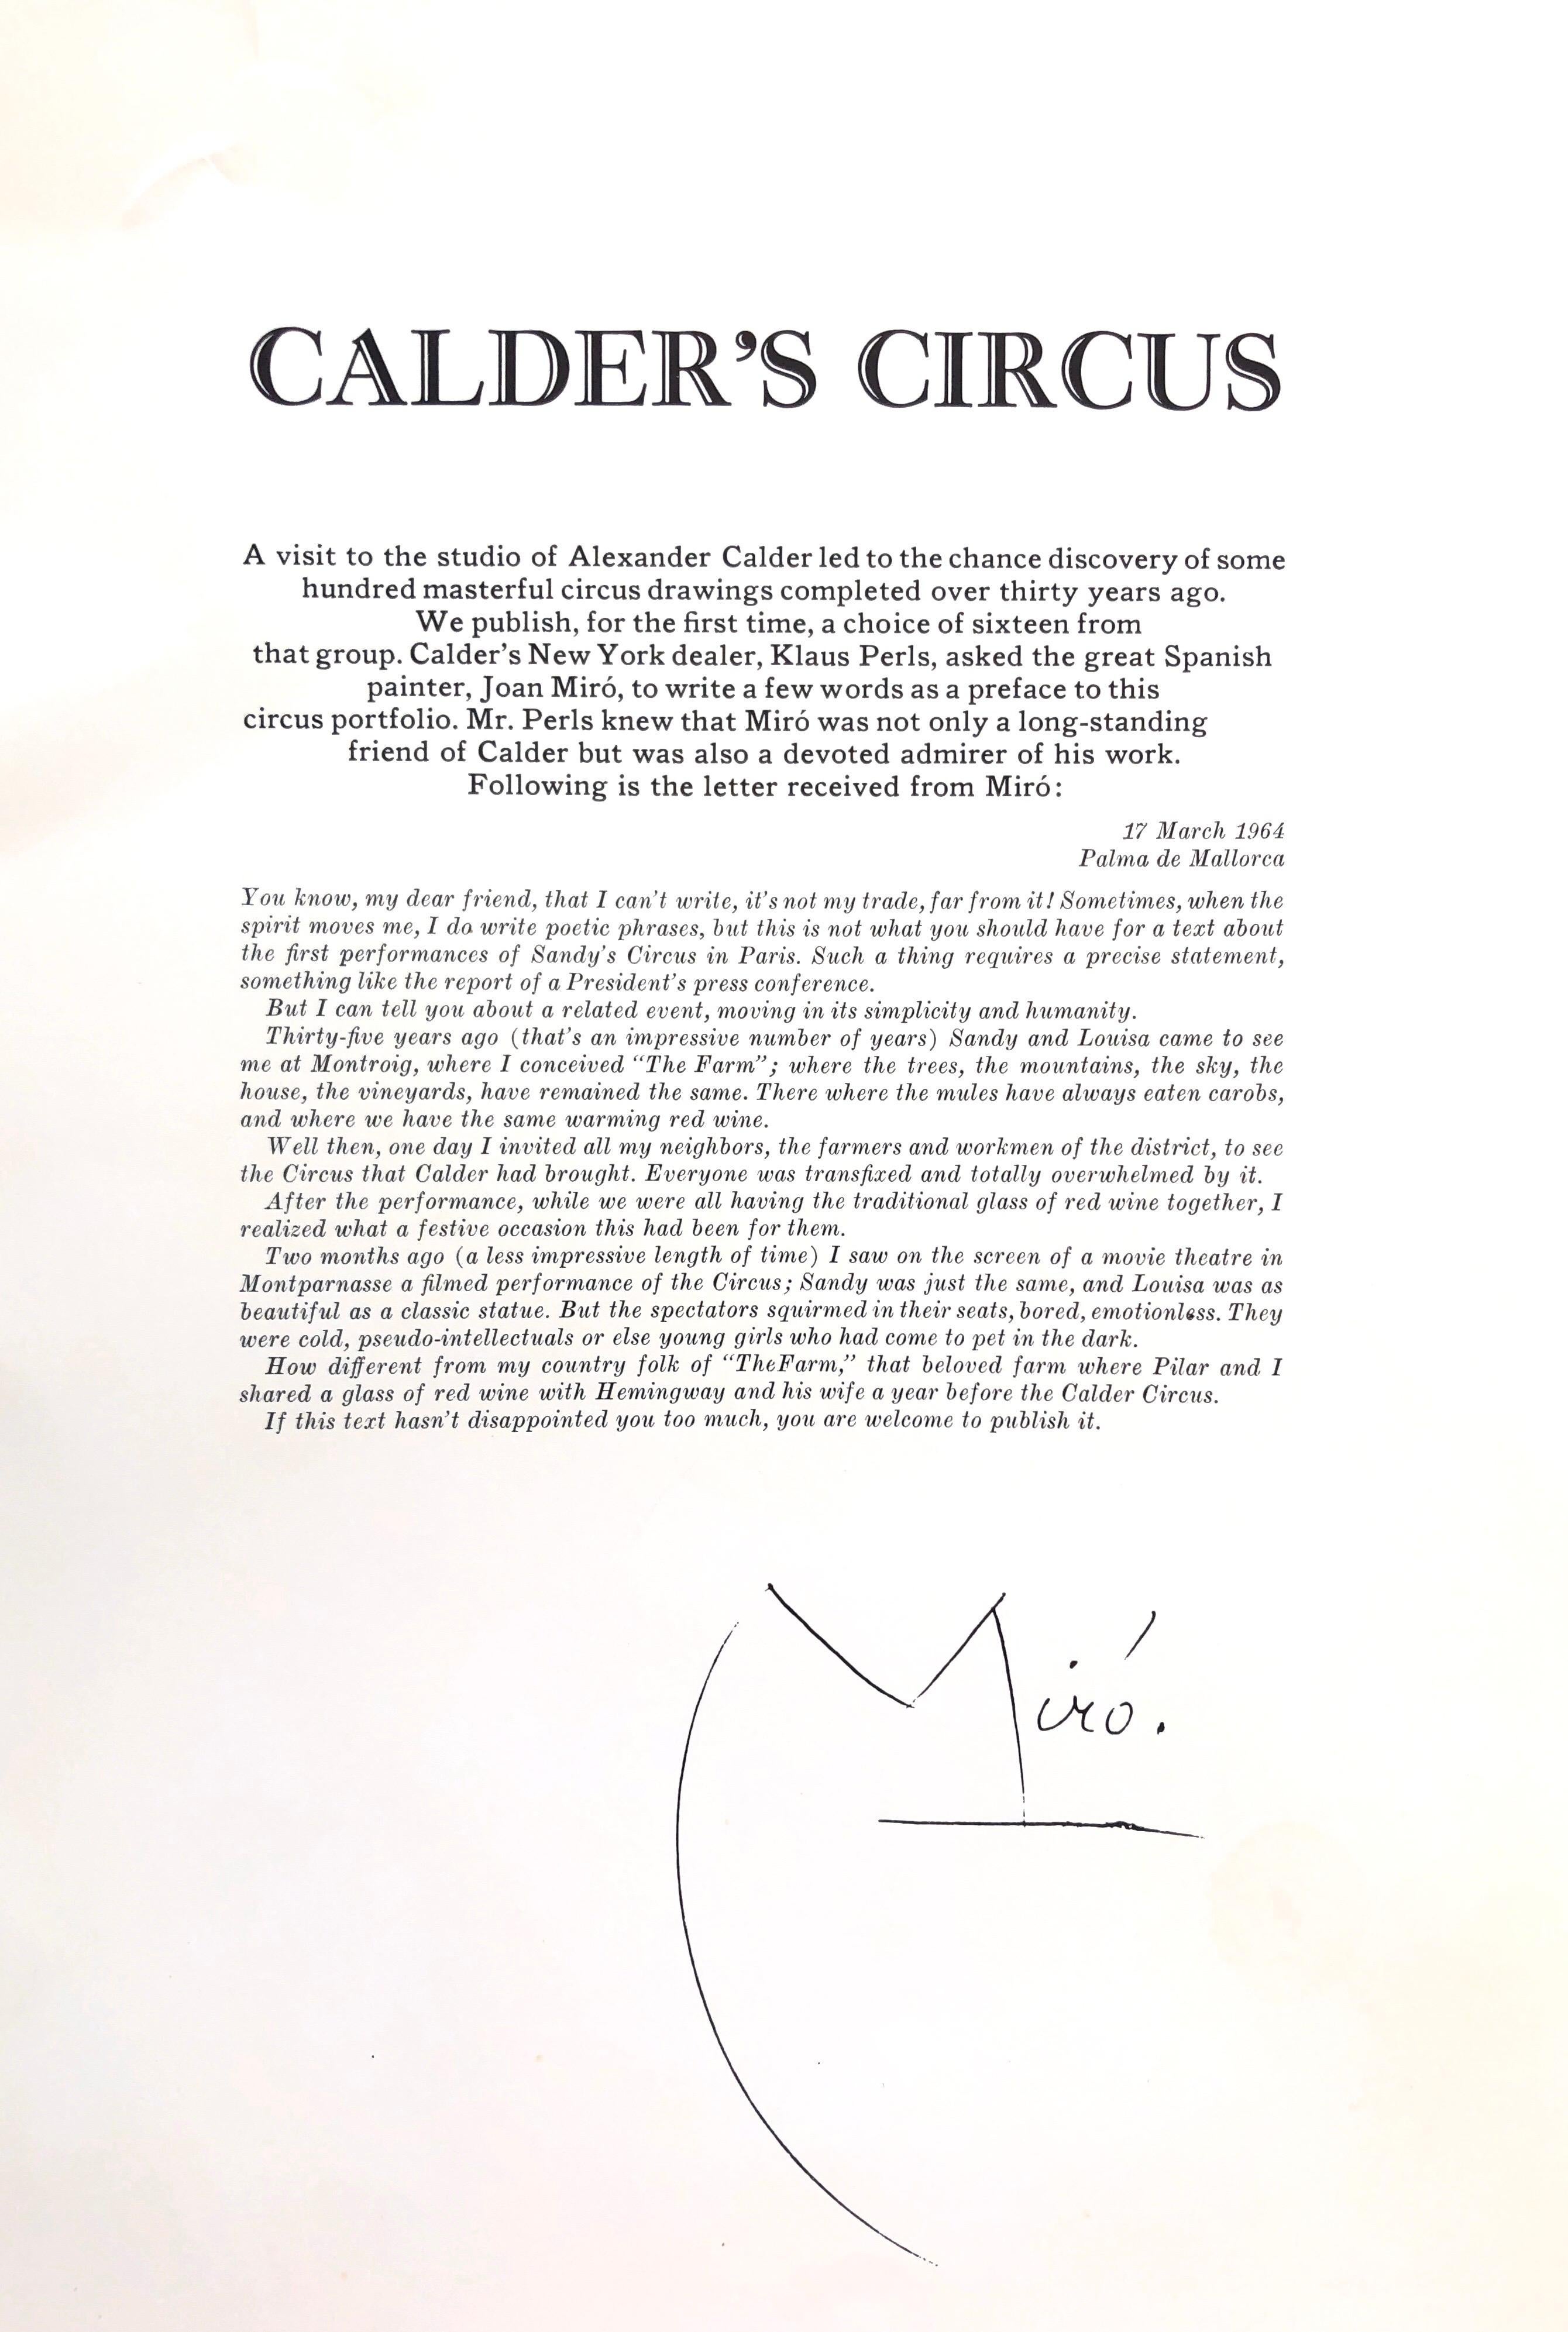 (after) Alexander Calder
